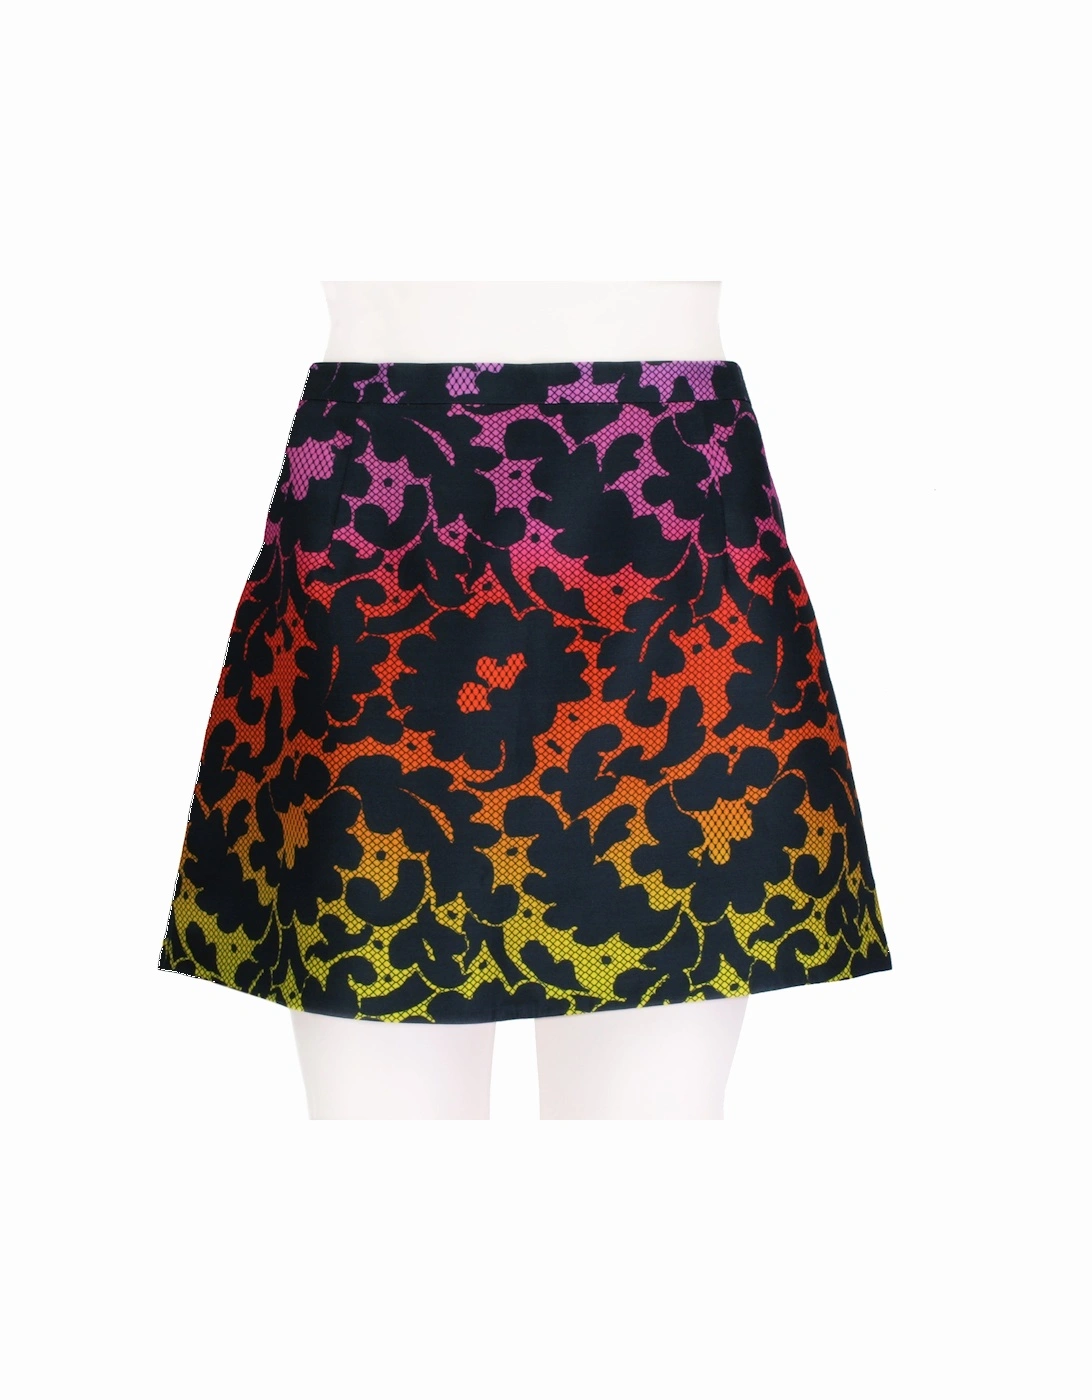 Skirt, 4 of 3